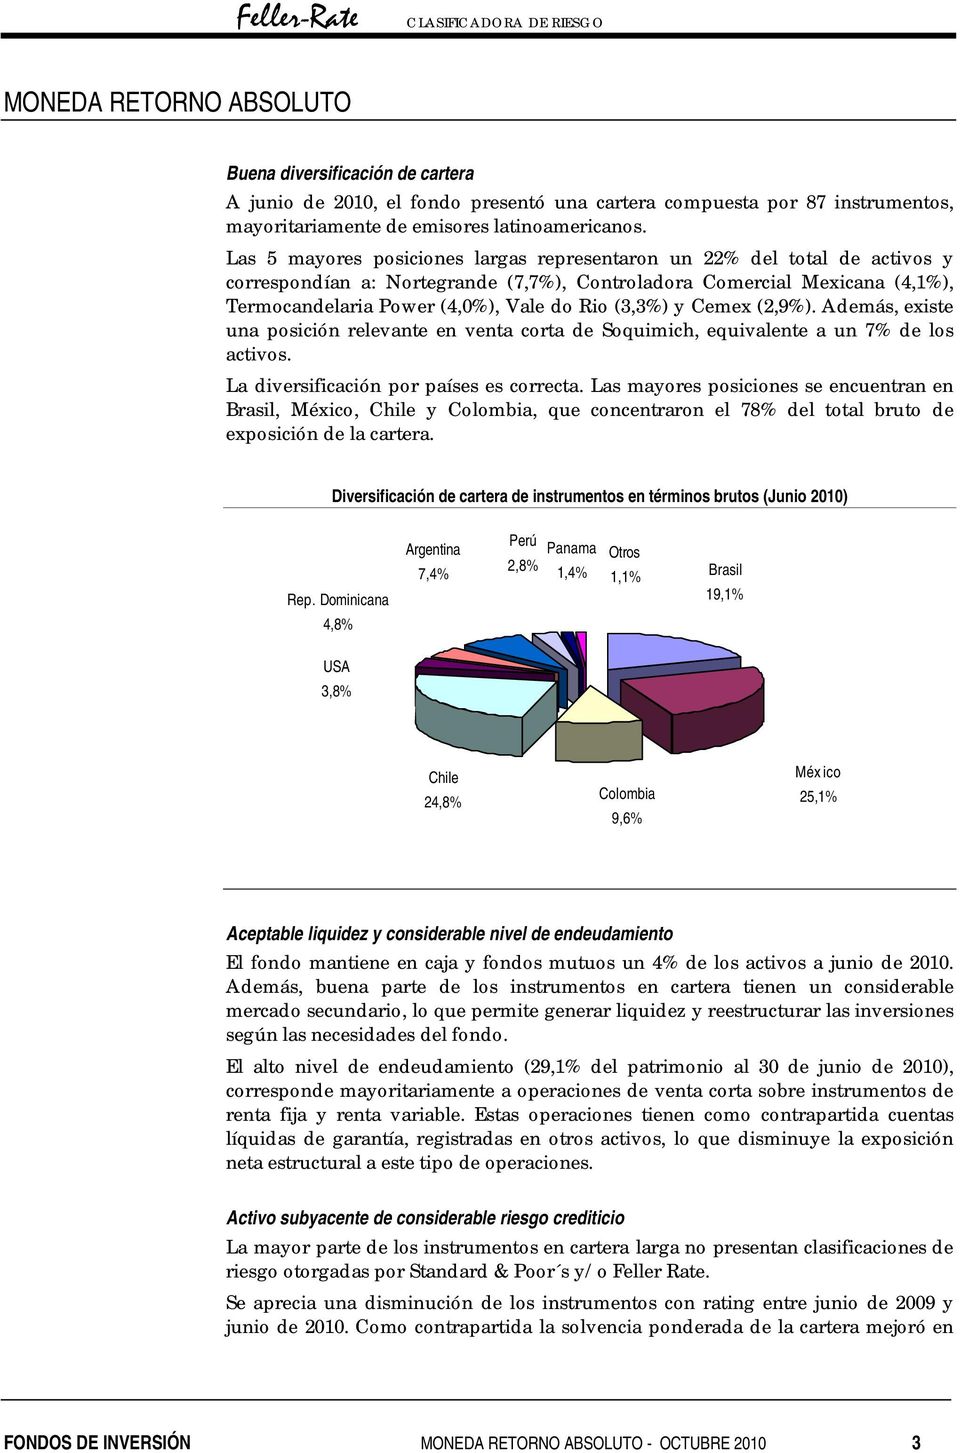 (3,3%) y Cemex (2,9%). Además, existe una posición relevante en venta corta de Soquimich, equivalente a un 7% de los activos. La diversificación por países es correcta.